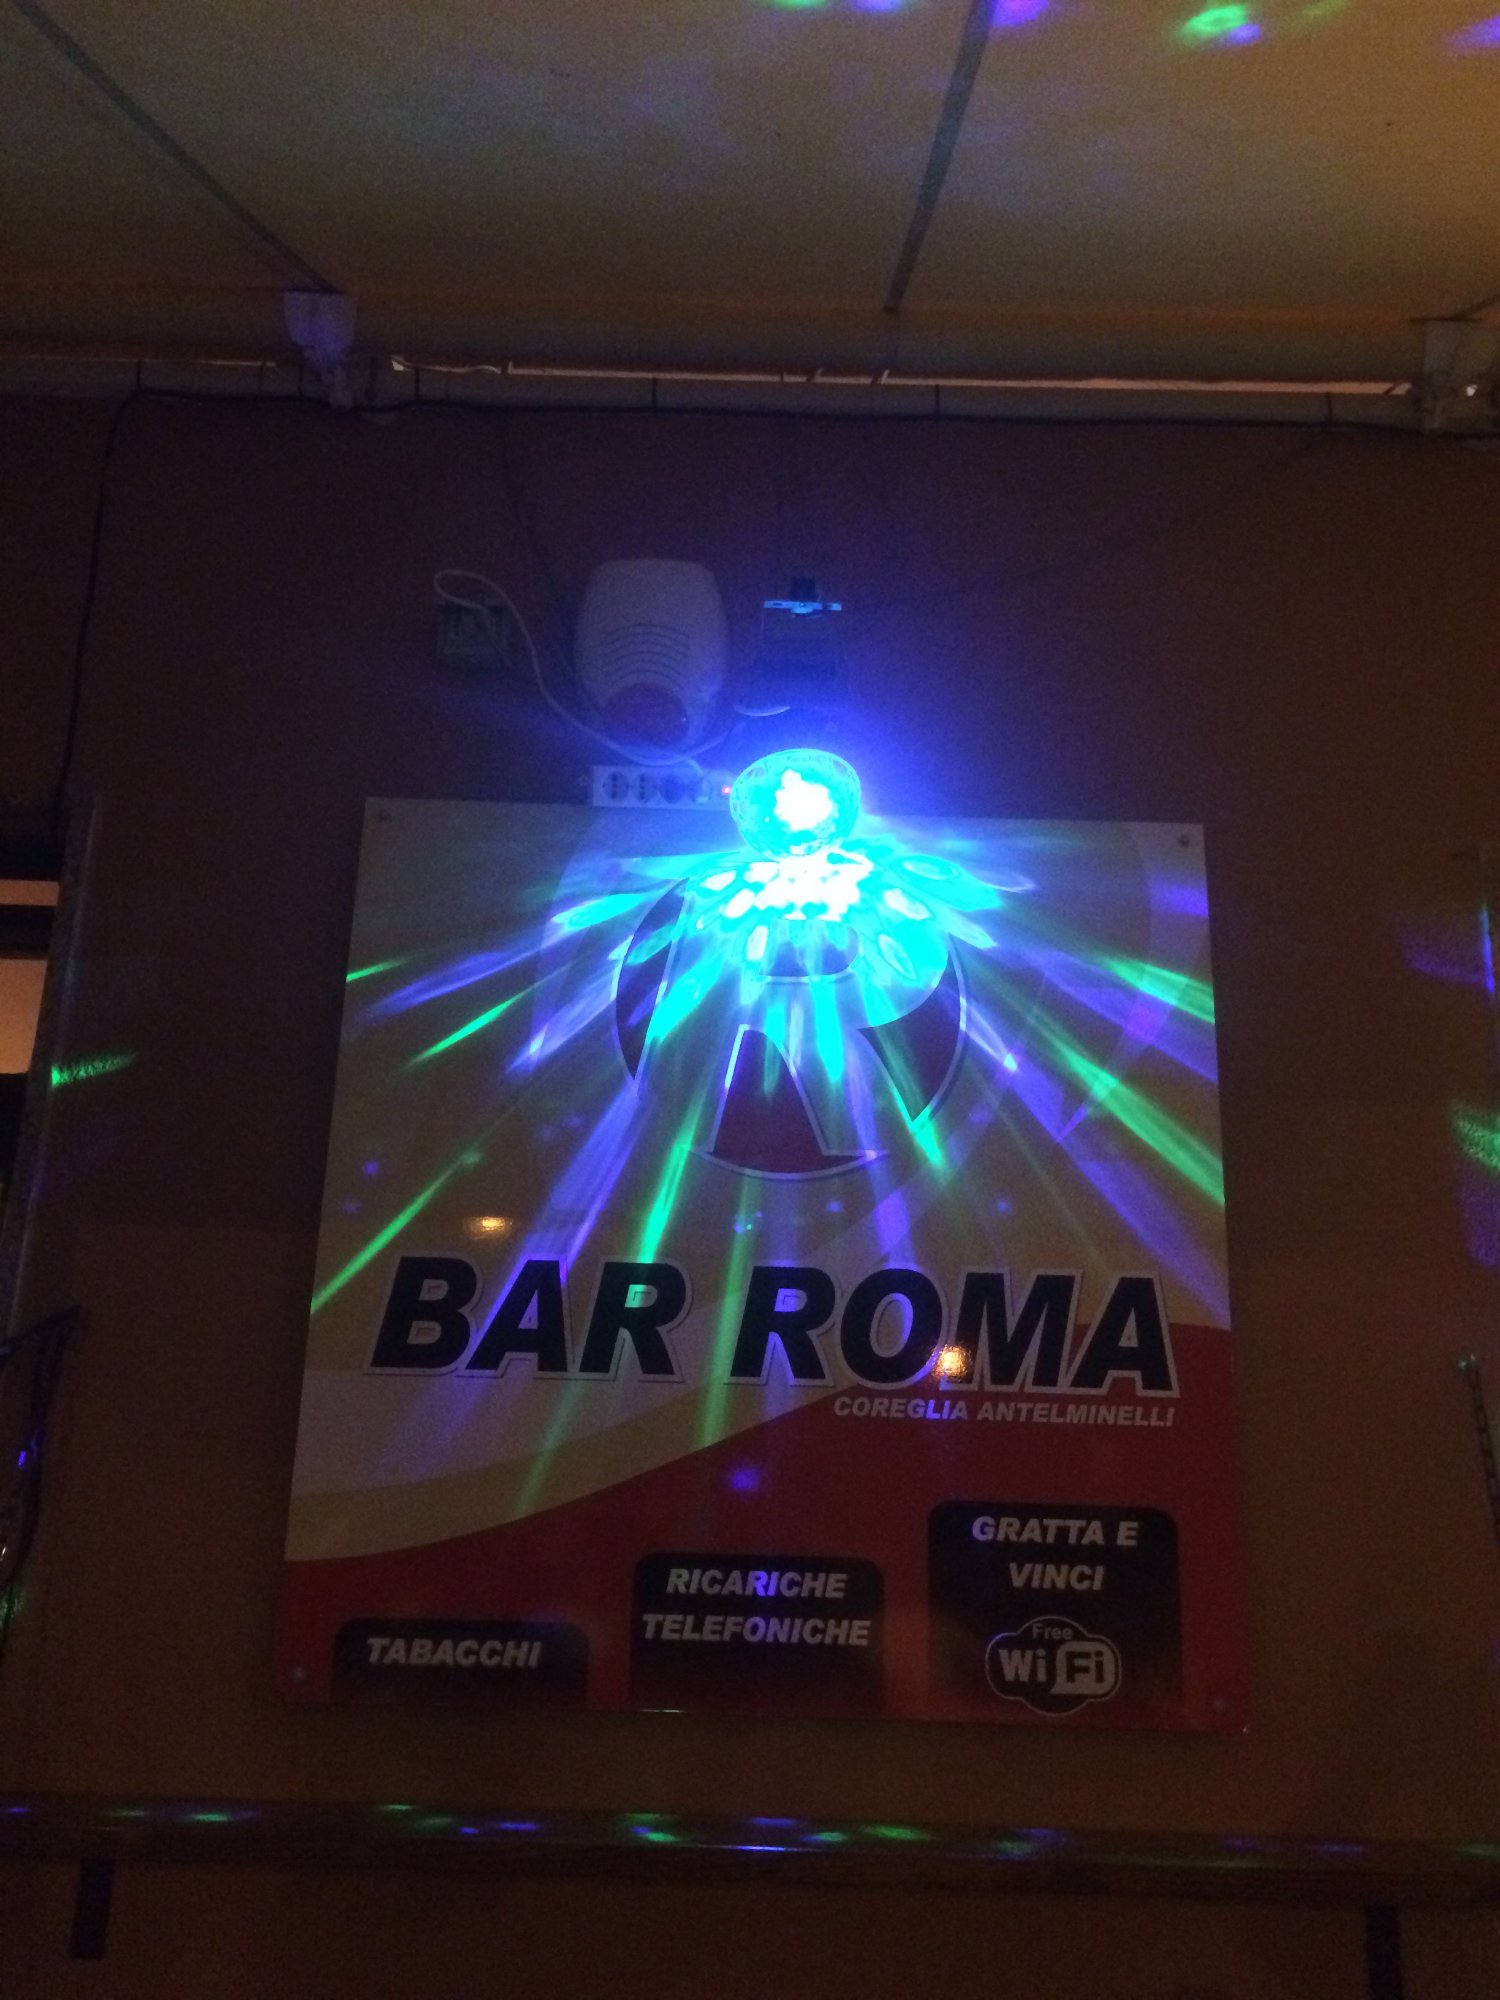 Bar Roma, Coreglia Antelminelli